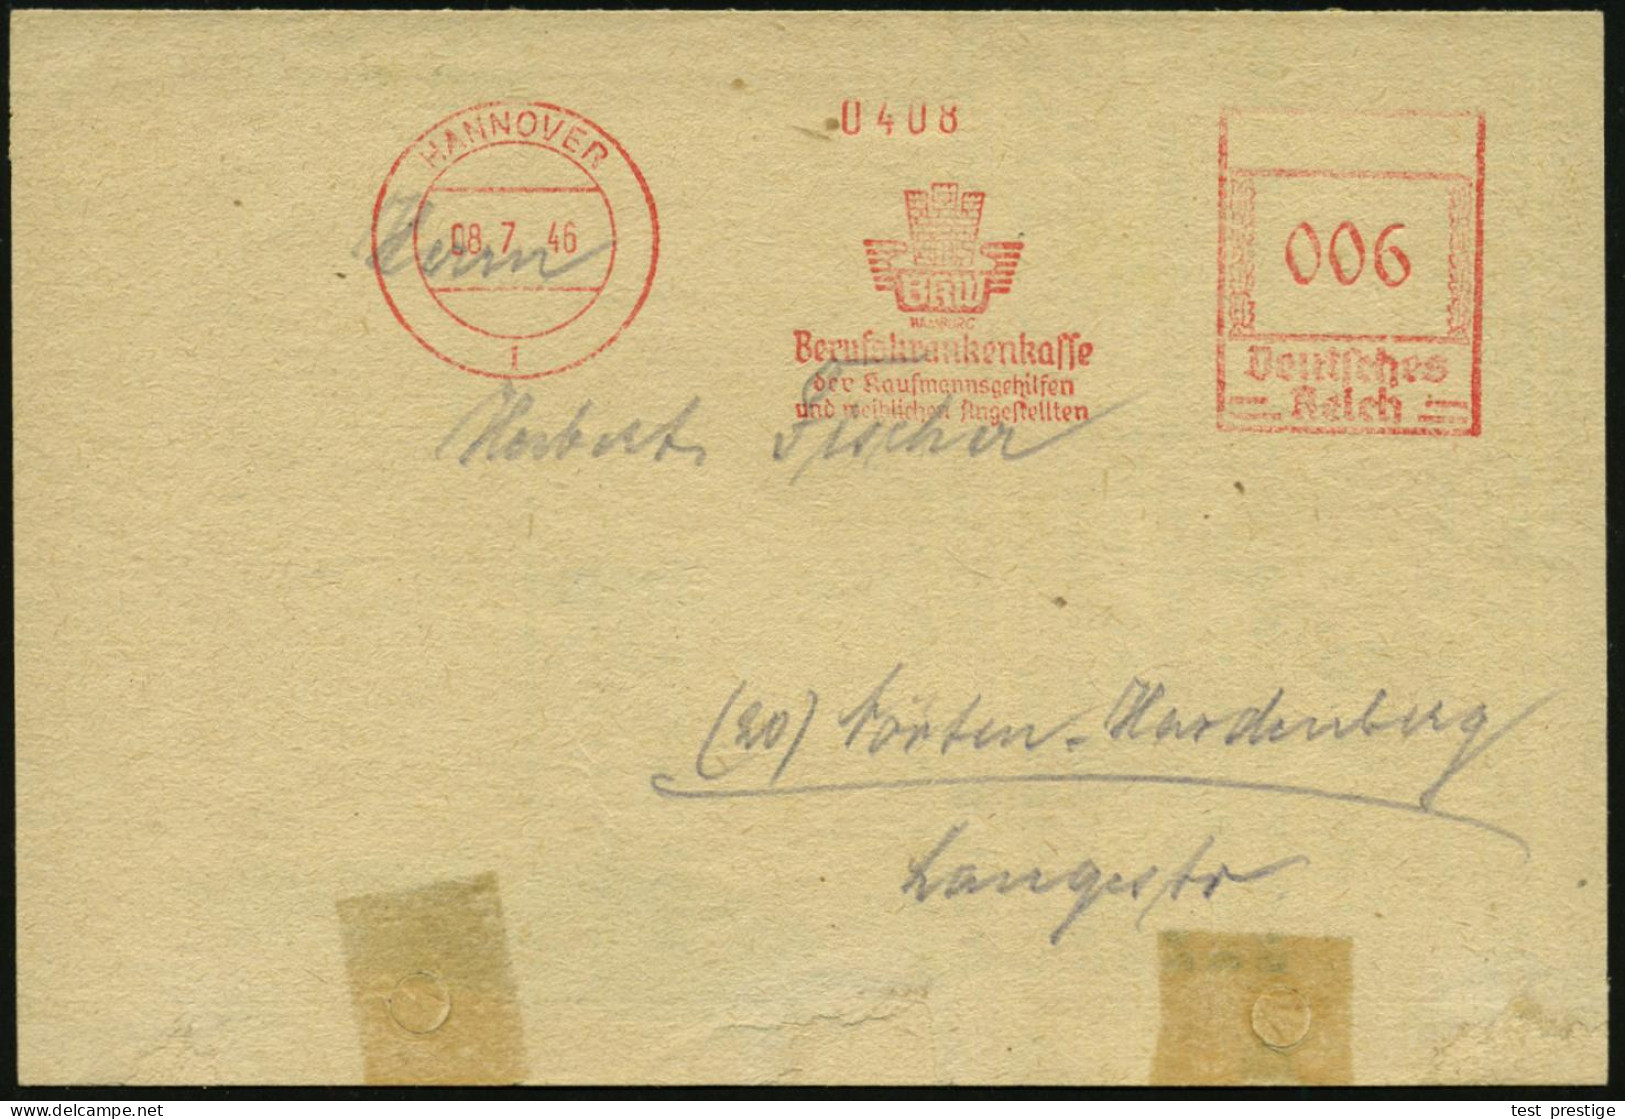 HANNOVER/ BKW/ HAMBURG/ Berufskrankenkasse/ Der Kaufmannsgehilfen/ U.weiblichen Angestellten 1946 (8.7.) Seltener, Aptie - Autres